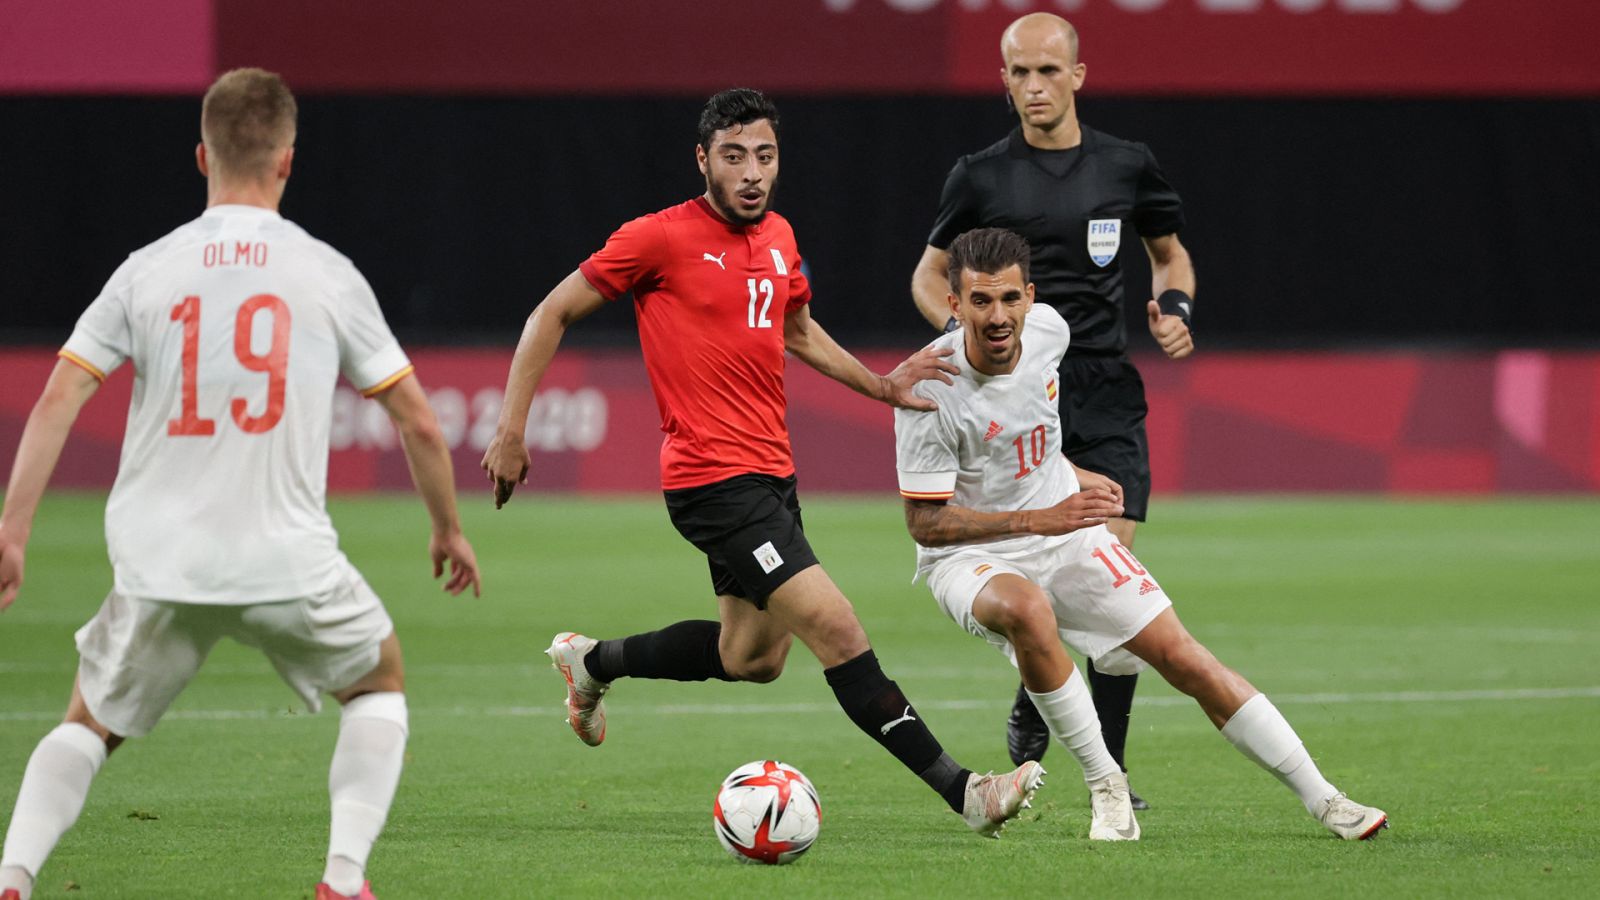 Fútbol: Grupo C: Egipto - España. Juegos Olímpicos de Tokio 2020